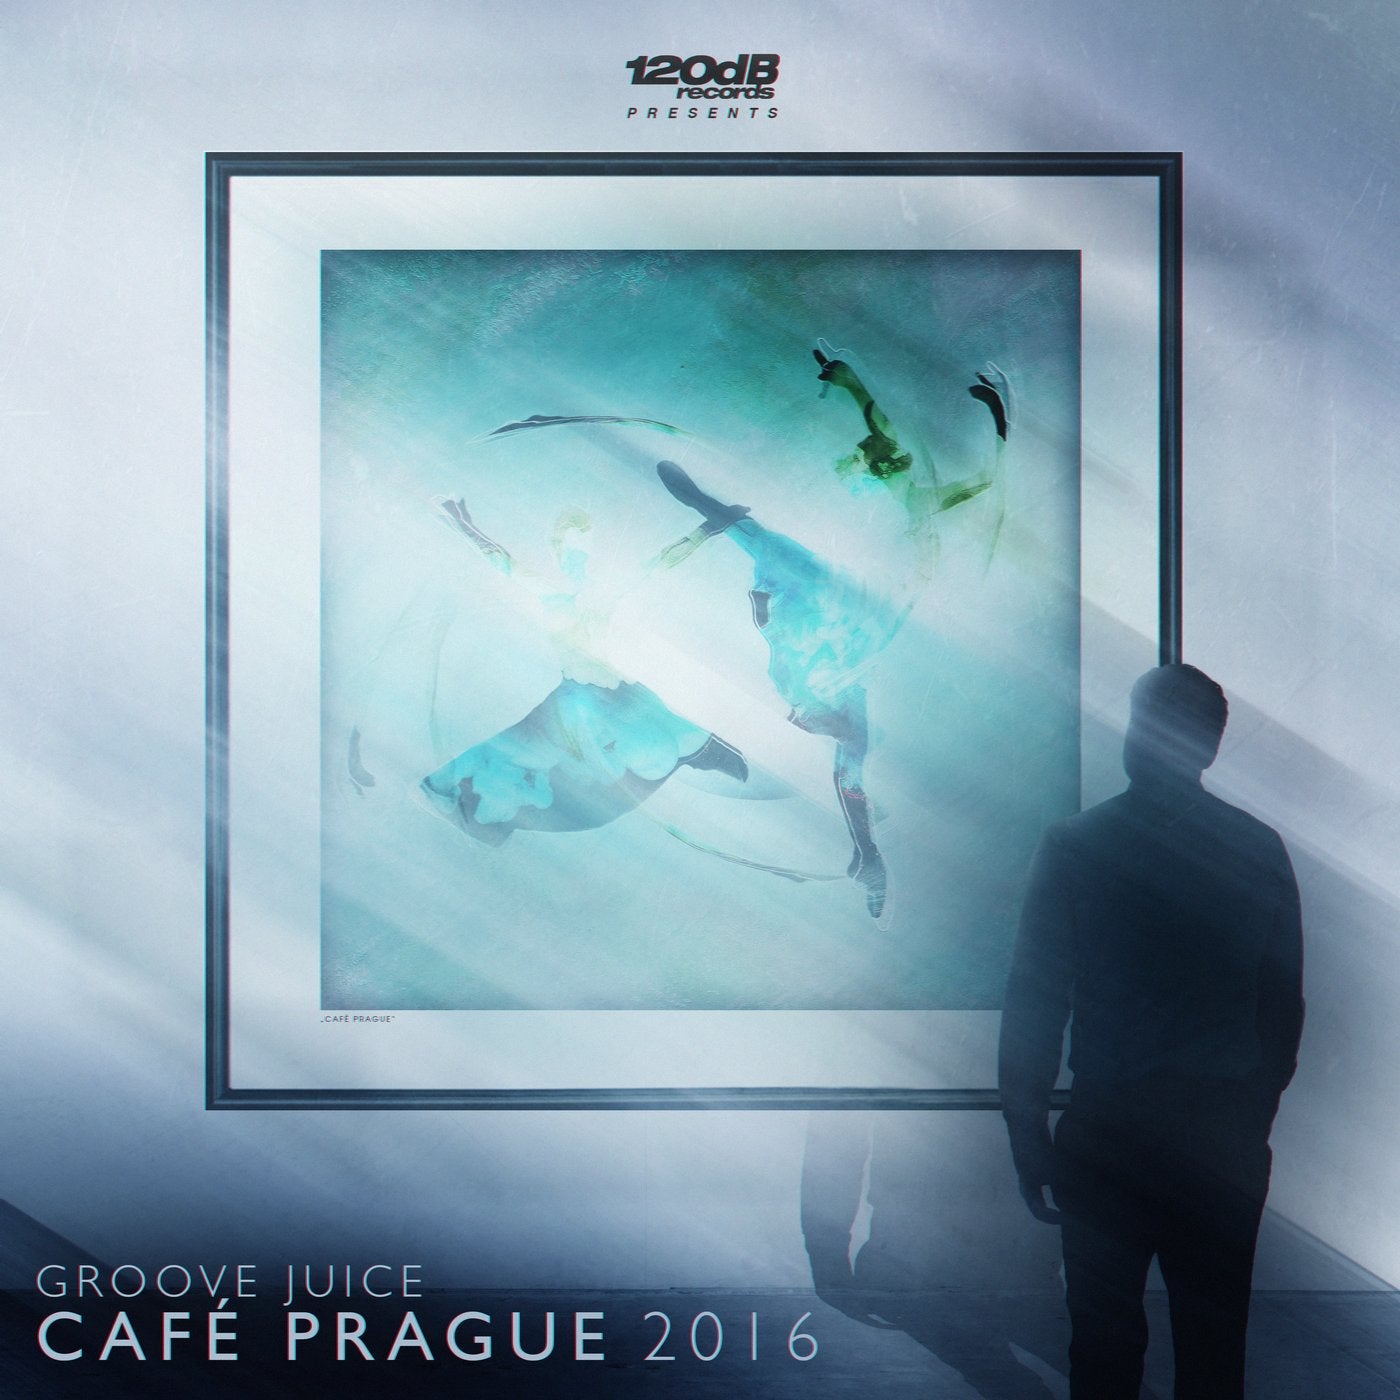 Cafe Prague 2016 (The 2016 Remixes)